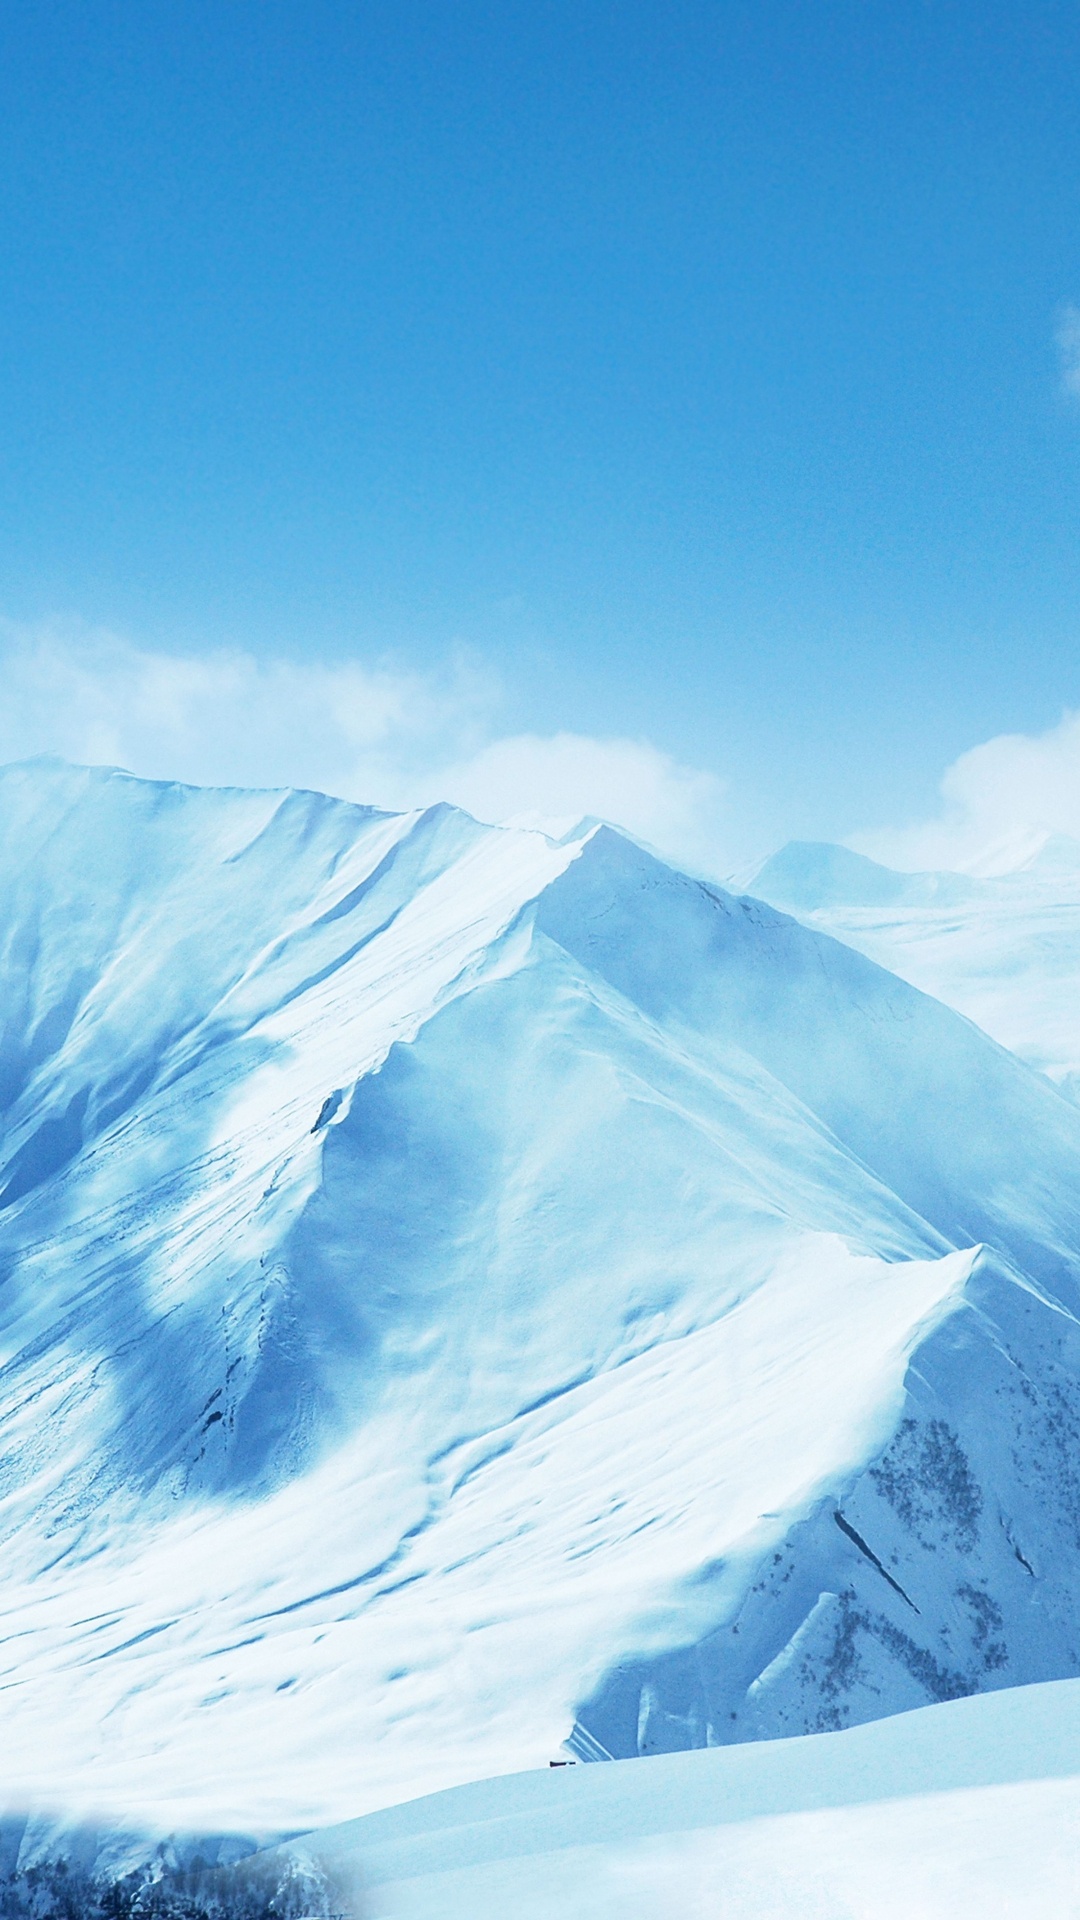 Montagne Couverte de Neige Sous Ciel Bleu. Wallpaper in 1080x1920 Resolution